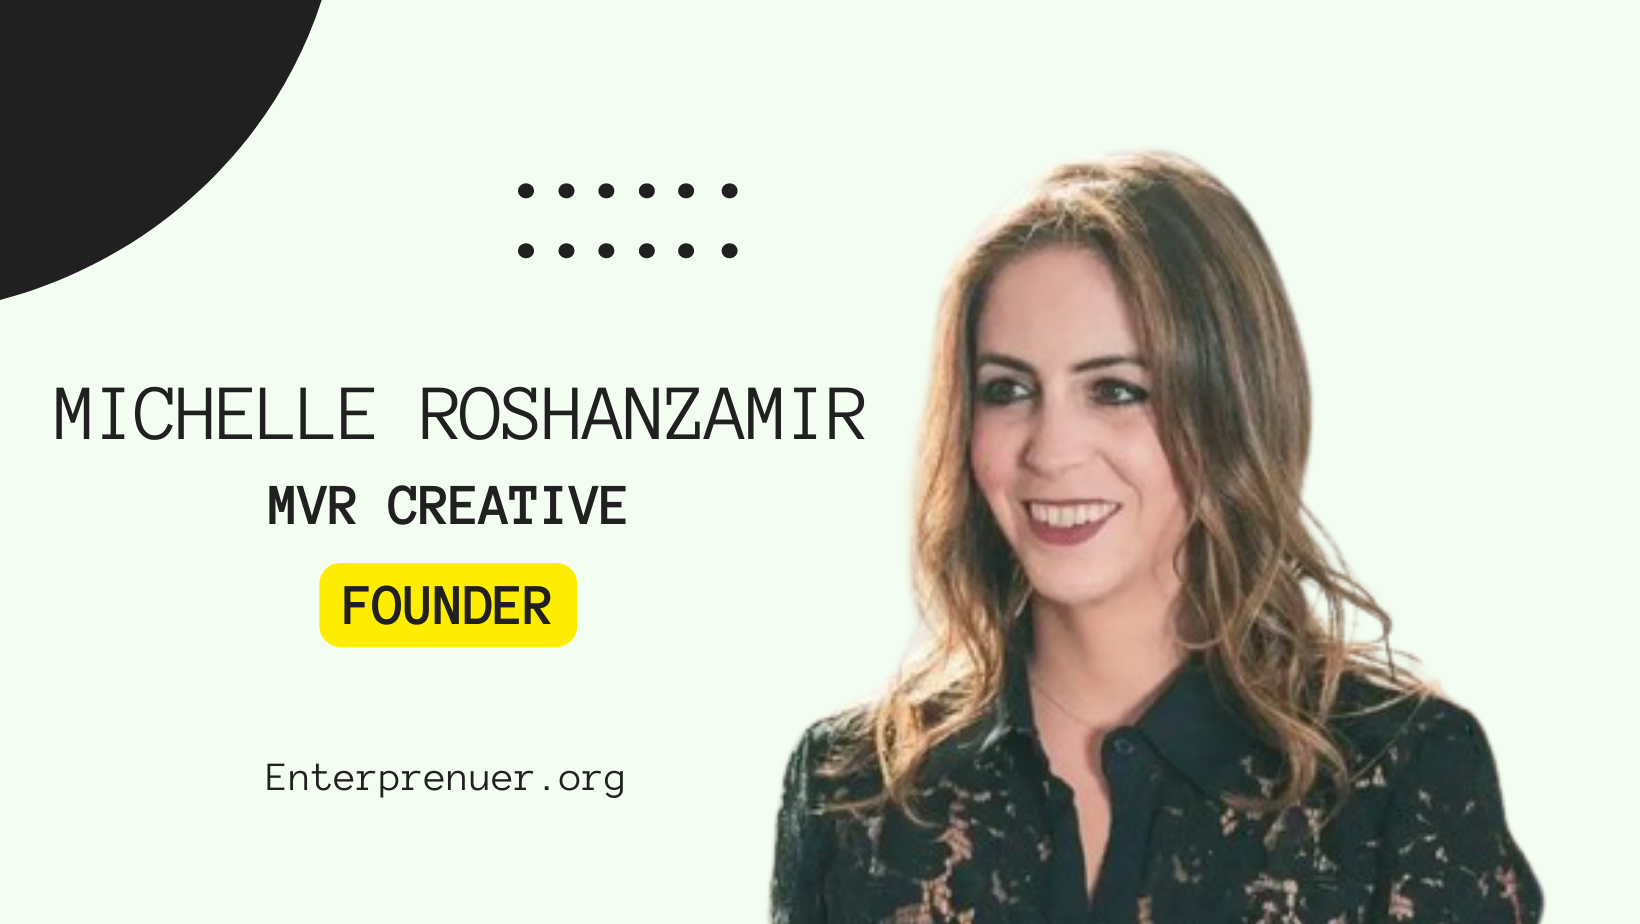 Michelle Roshanzamir Founder of MVR Creative